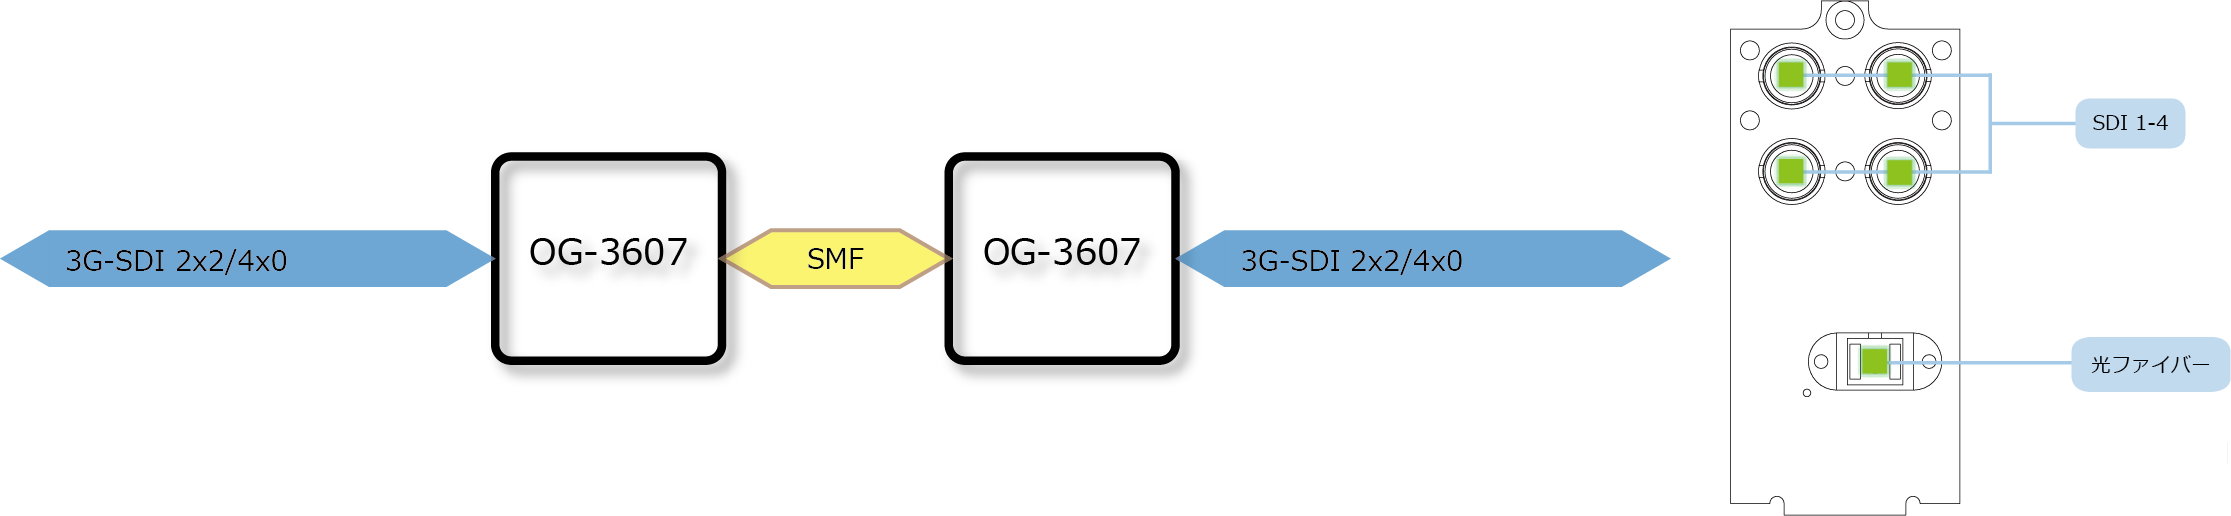 OG-3607 ブロック図/リアパネル図